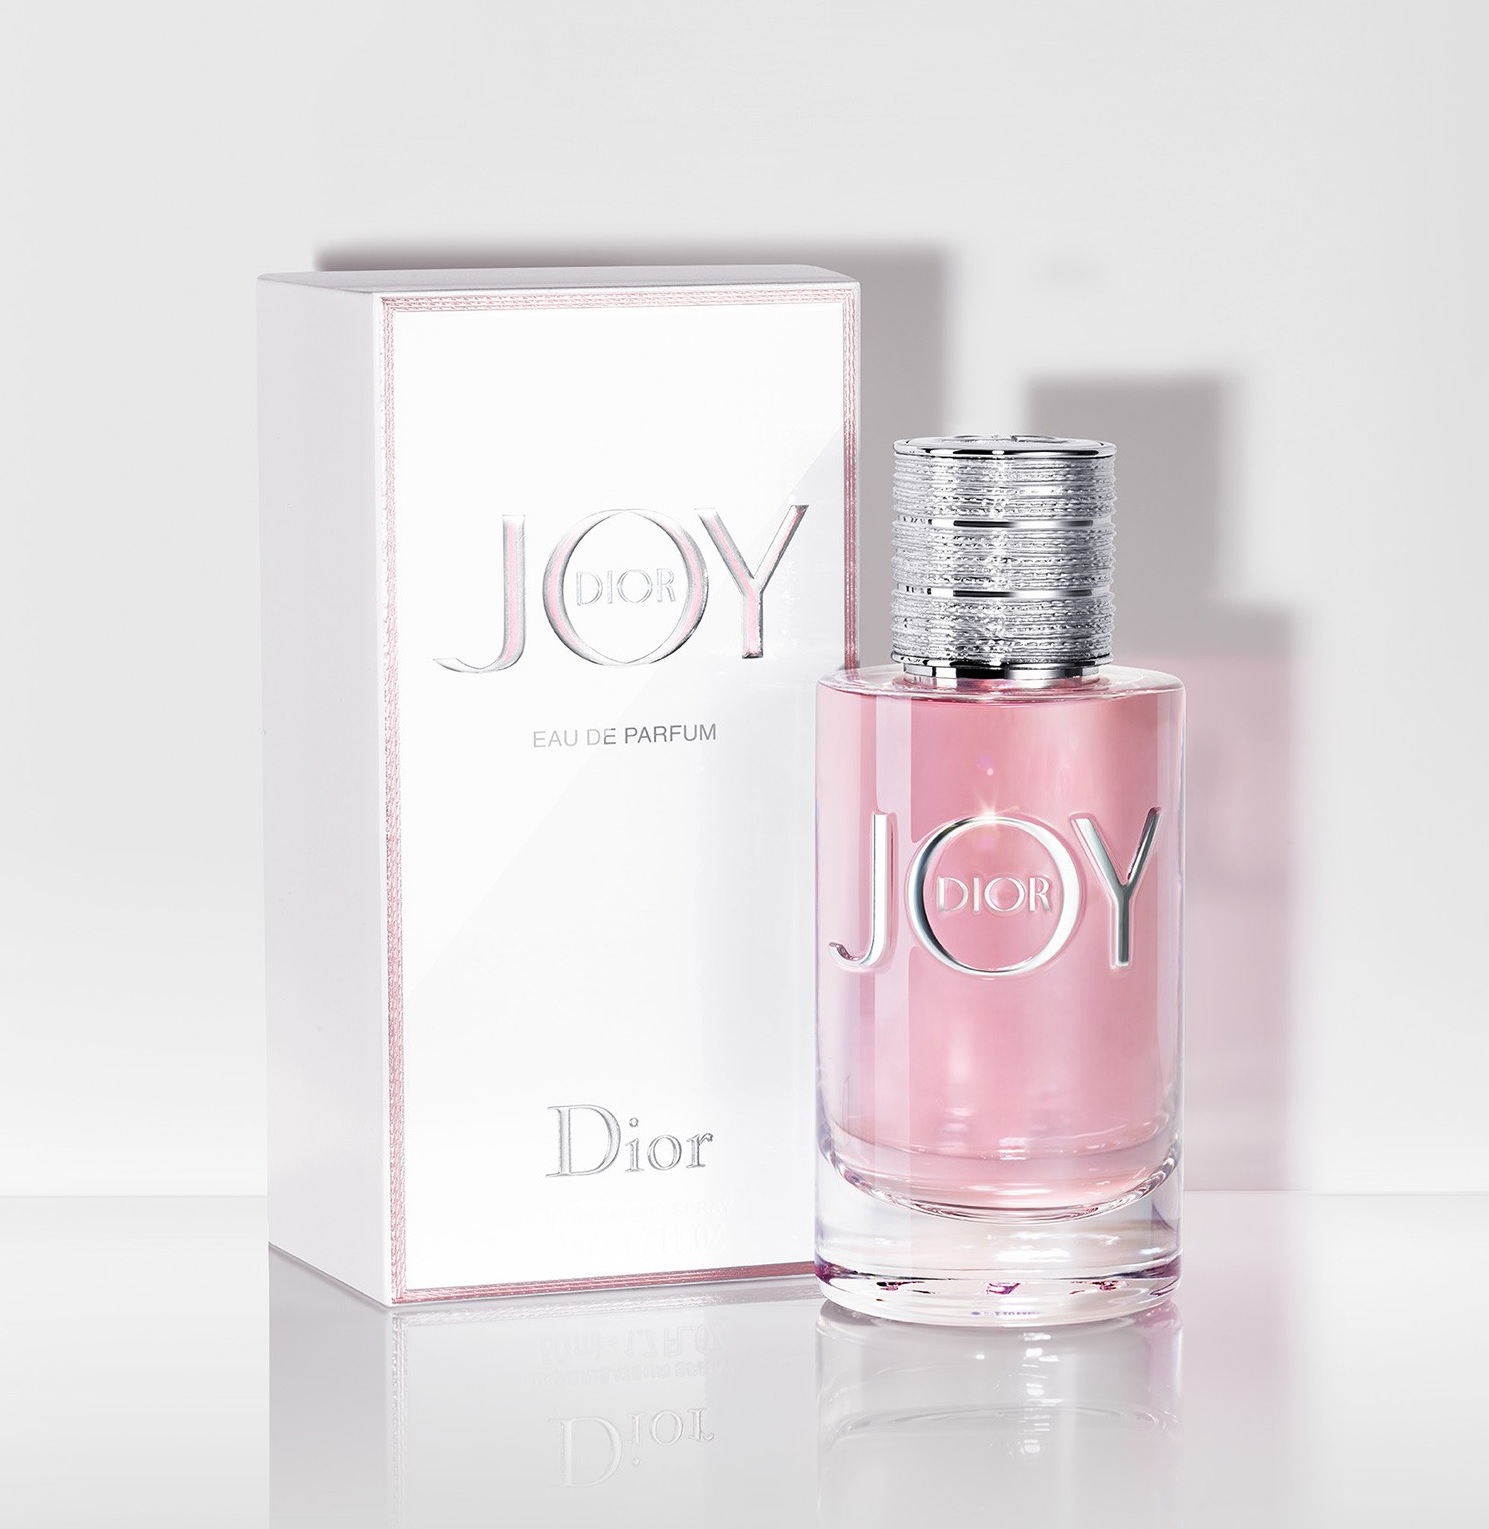 Joy by Dior Christian Dior Parfum - ein neues Parfum für Frauen 2018